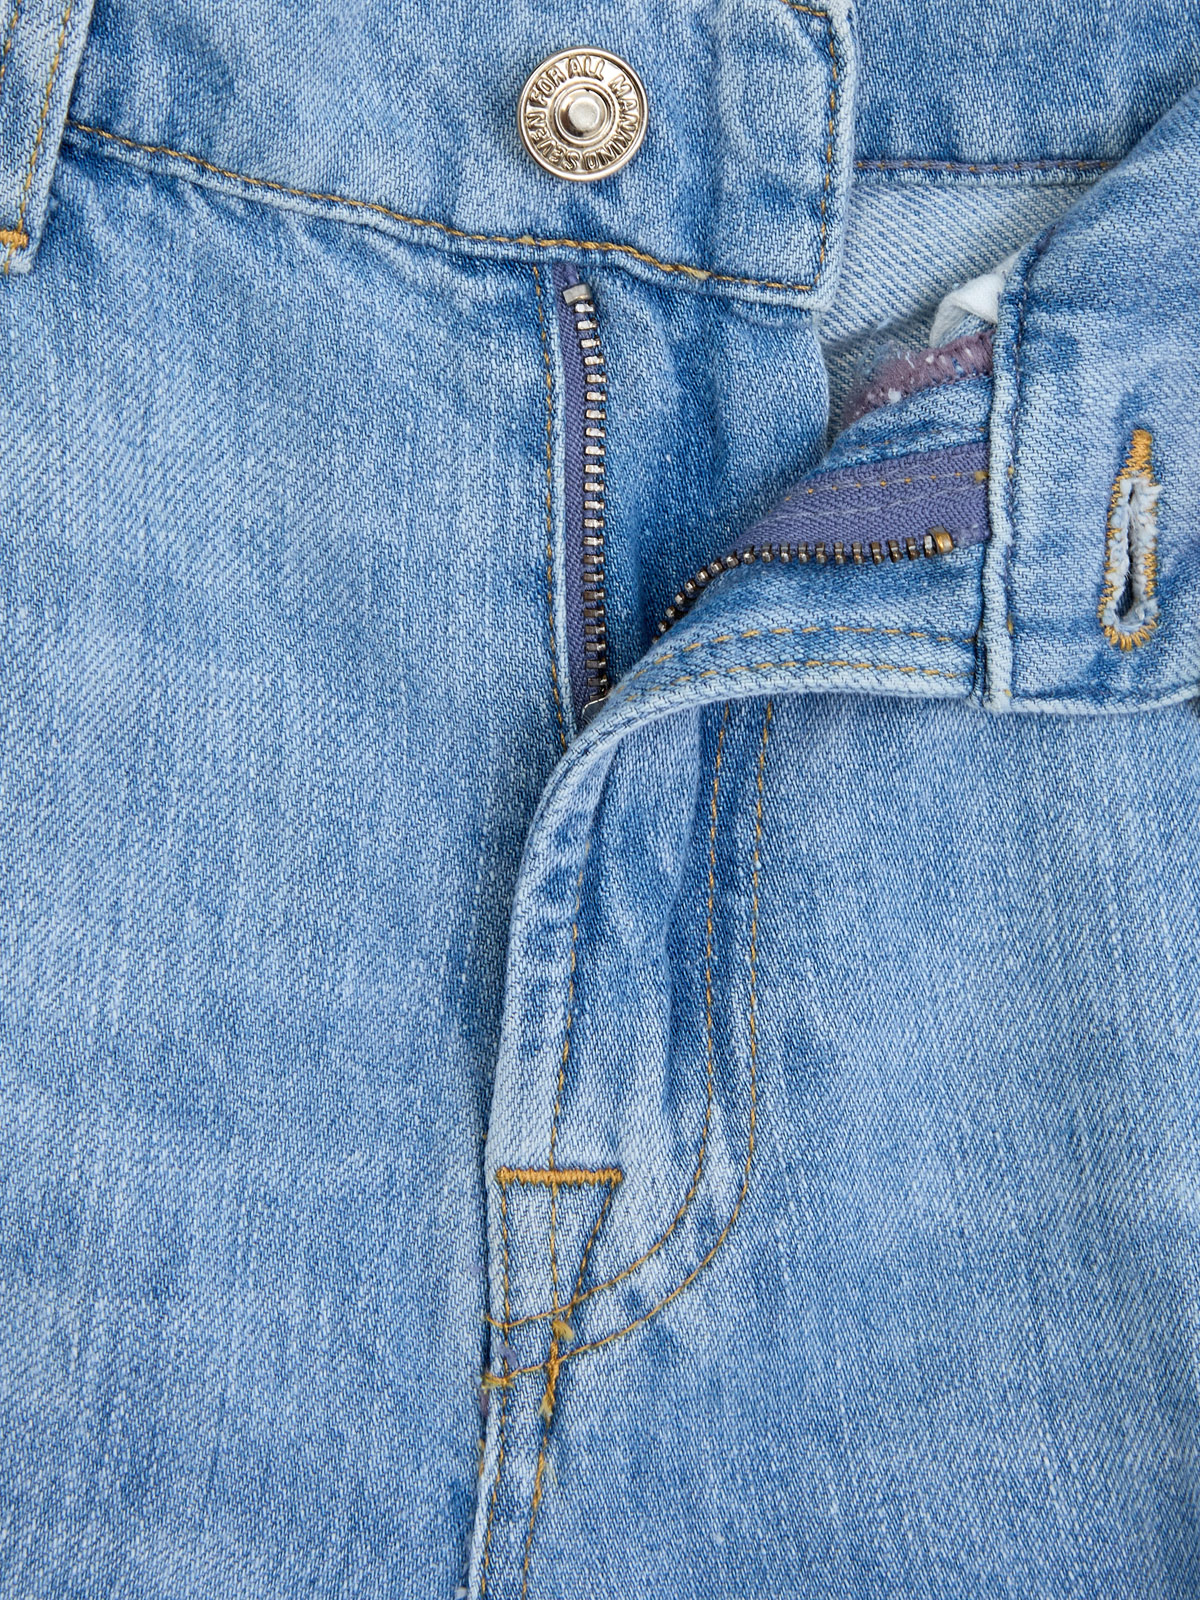 Расклешенные джинсы Lotta в стиле 70-х из выбеленного денима 7 FOR ALL MANKIND, цвет голубой, размер XS;S;S - фото 6